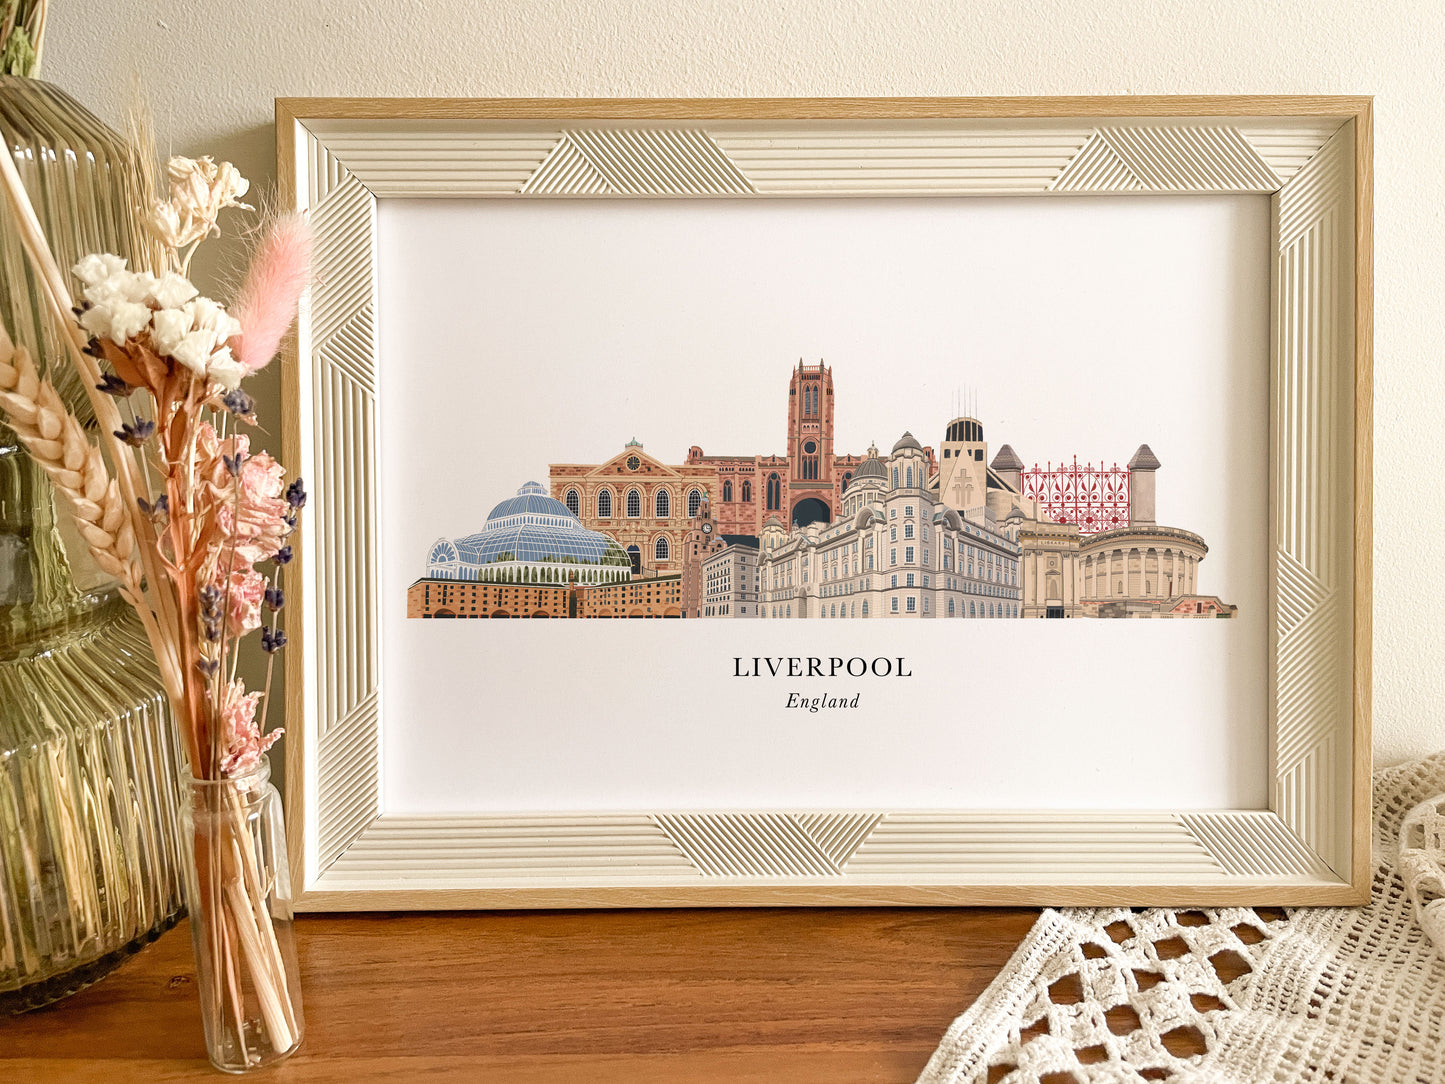 Liverpool Skyline Print